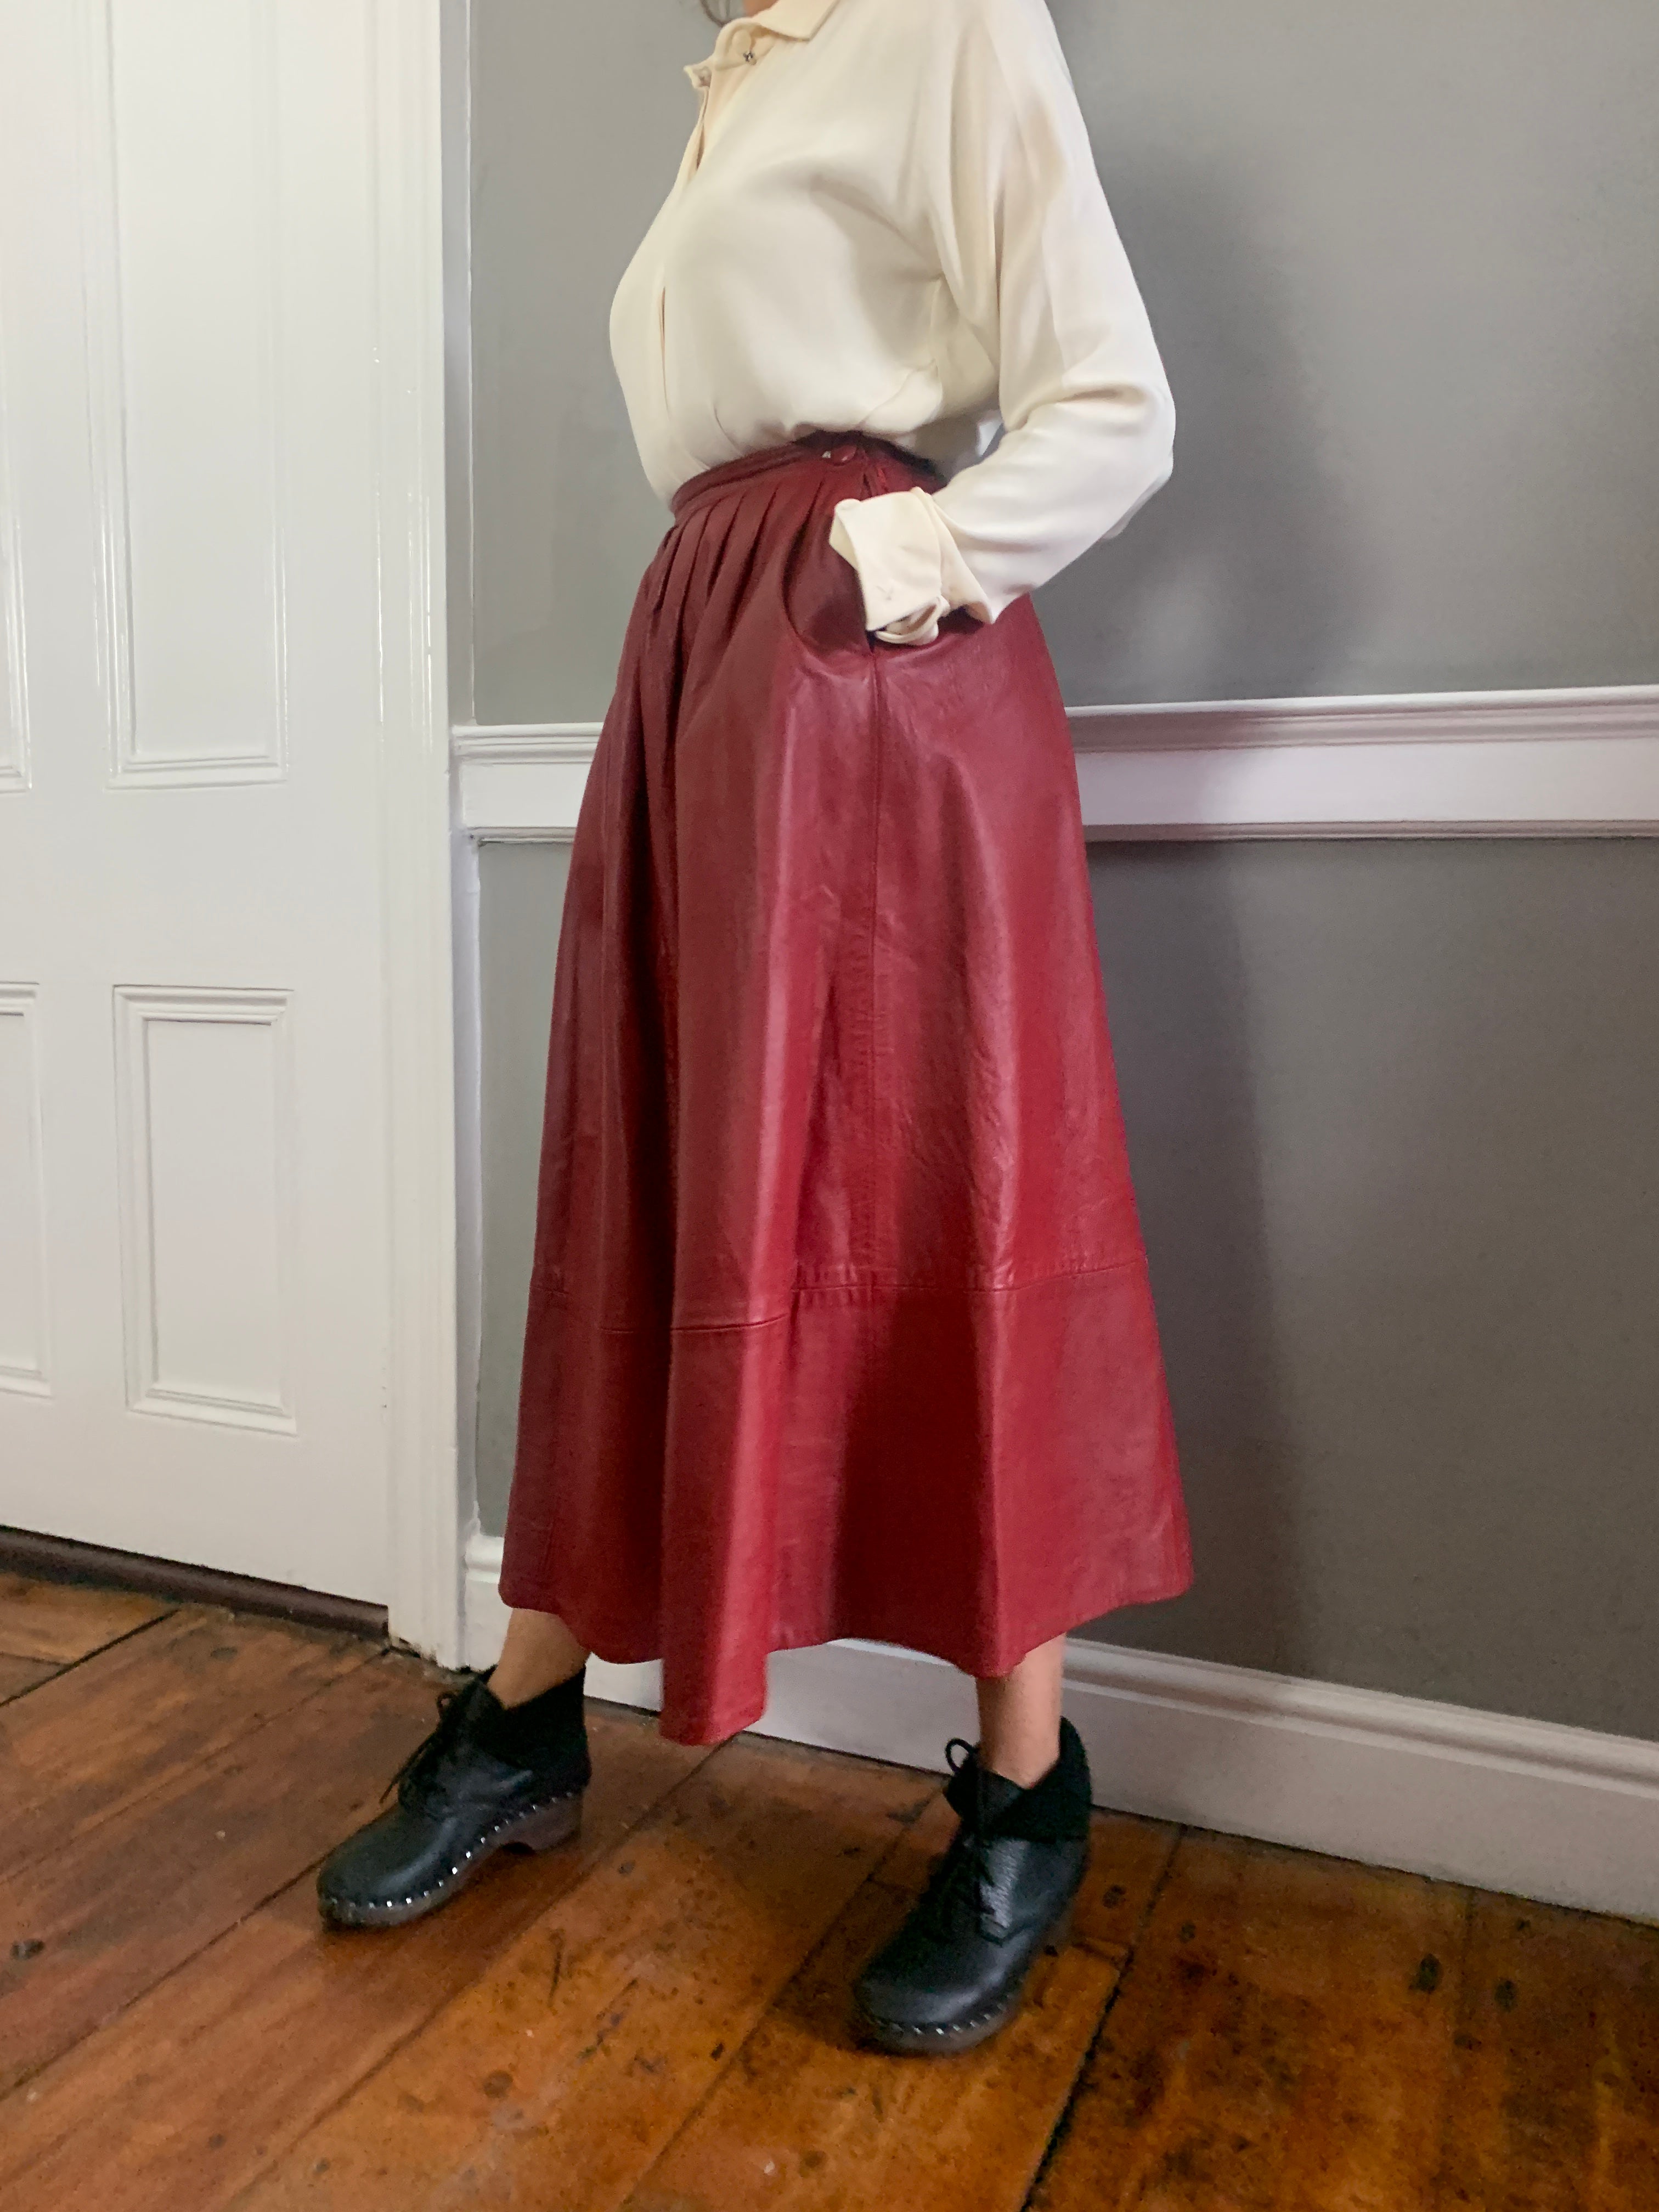 Vintage RED leather full midi length skirt